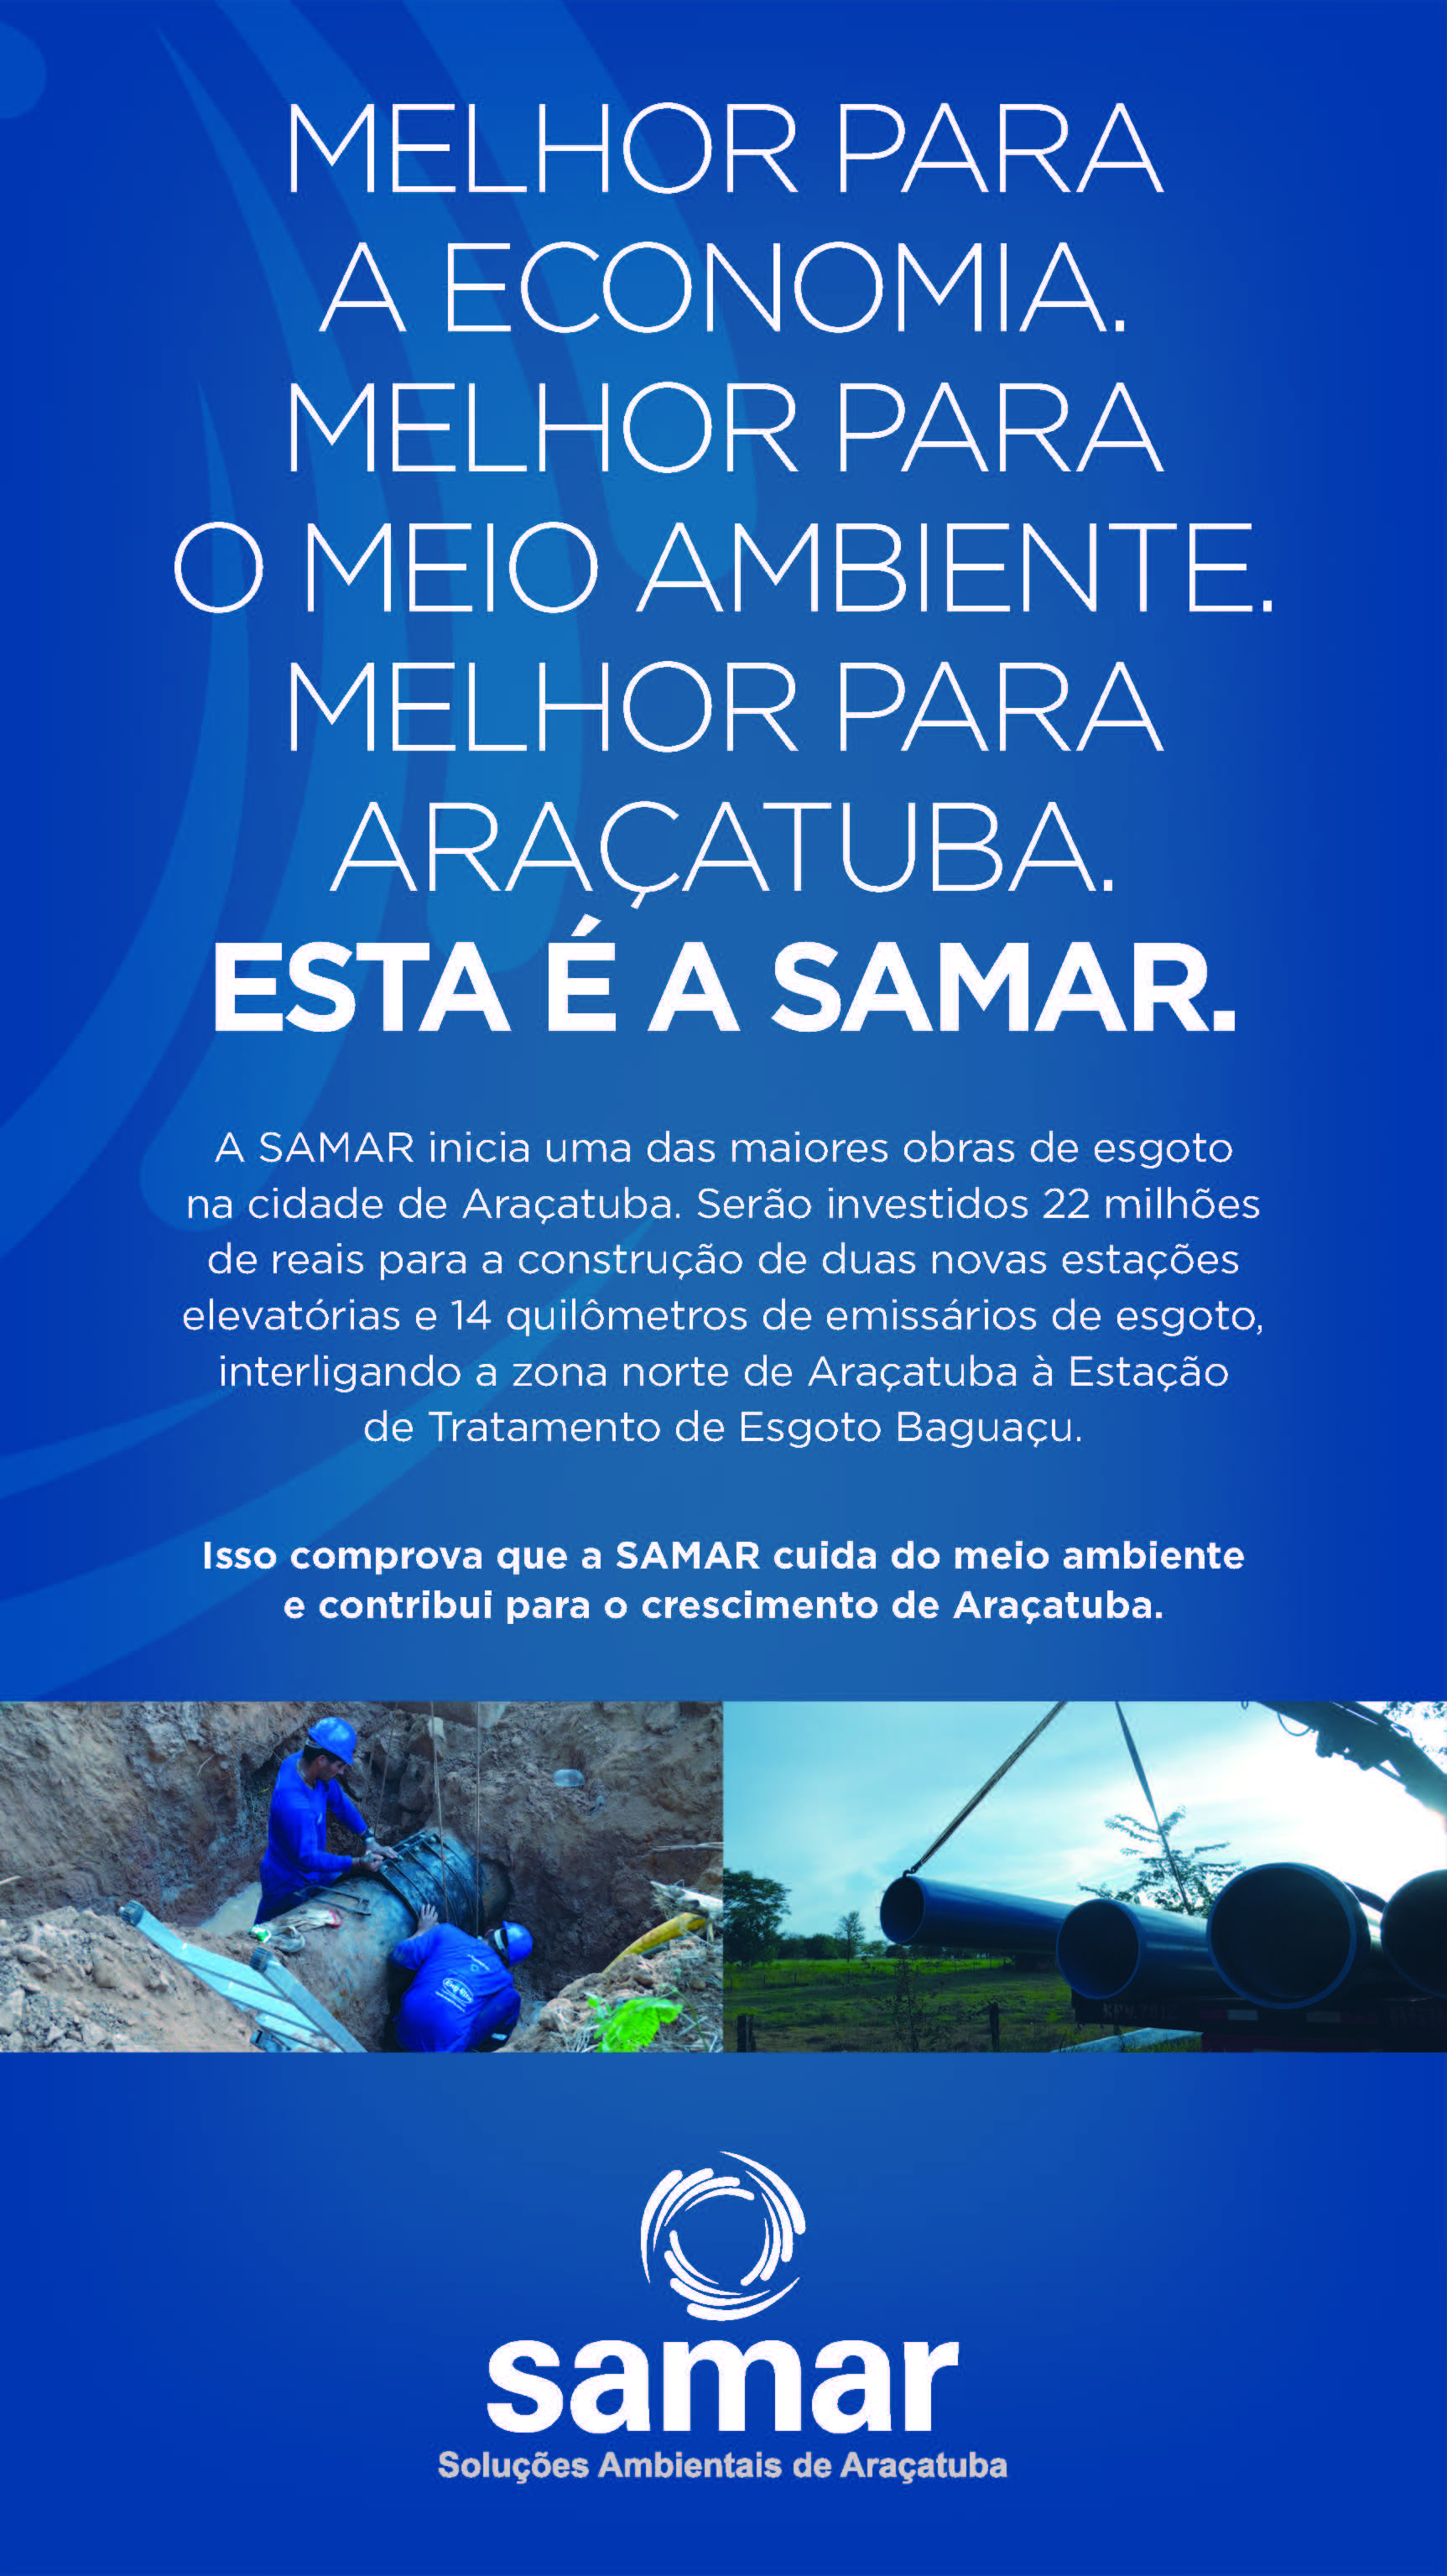 Featured image for “Reversão da Bacia”